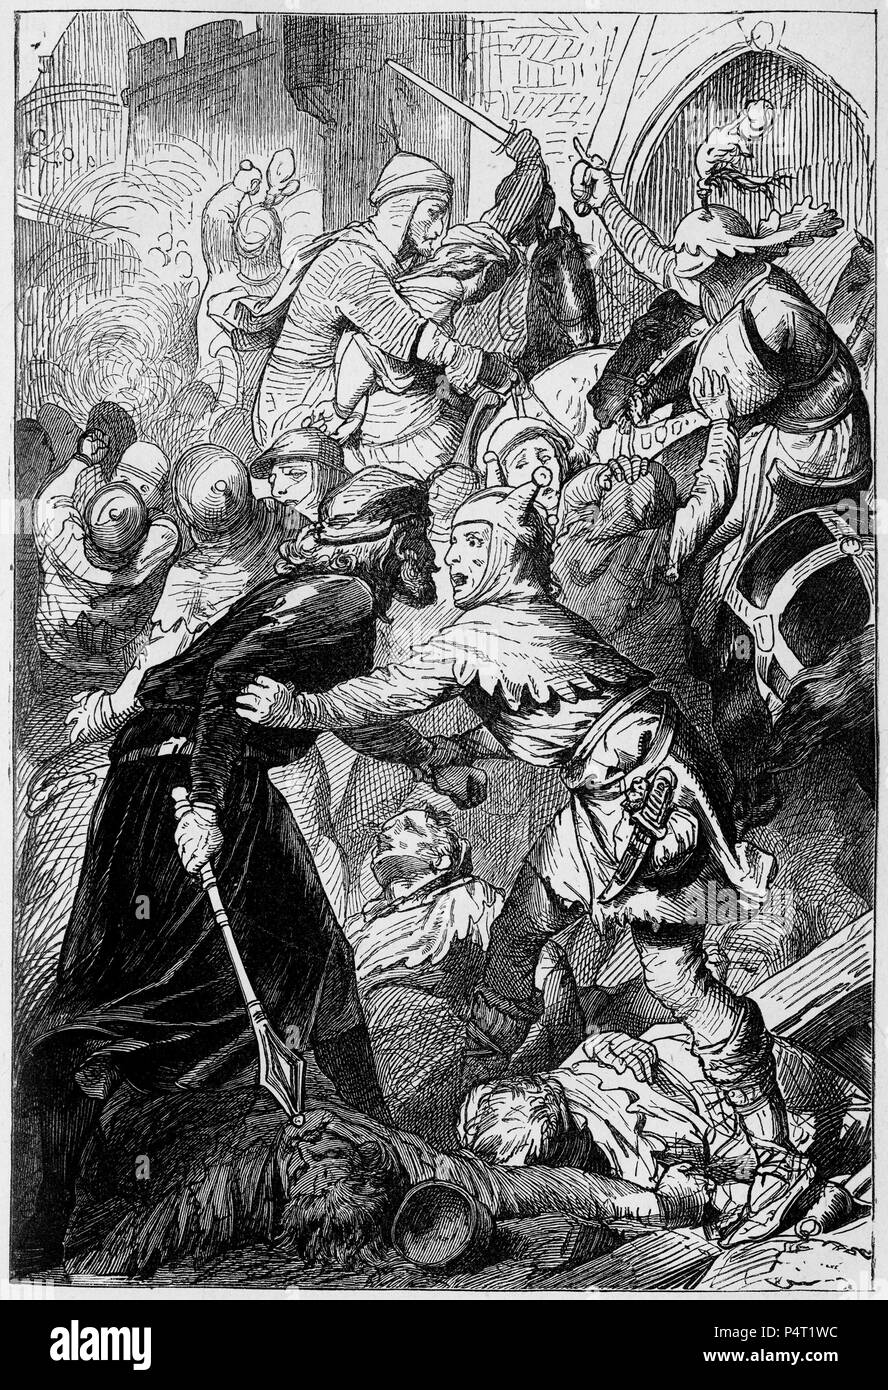 Gravure de soldats dans une scène de bataille médiévale. Illustré d'une copie d'Ivanhoé, 1878. Banque D'Images